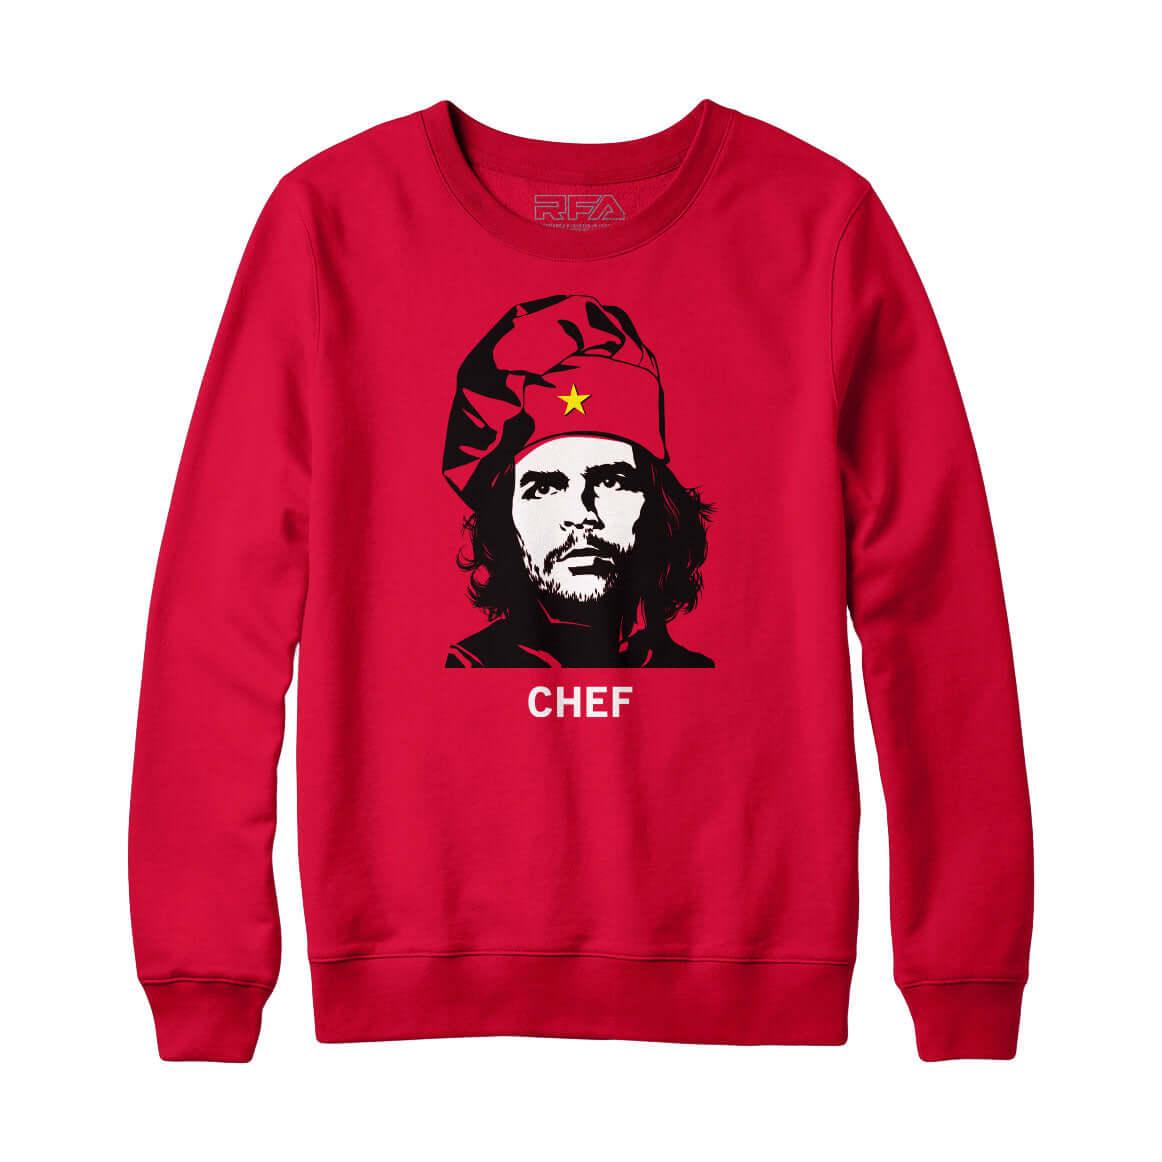 Che Chef Sweatshirt - Rocket Factory Apparel